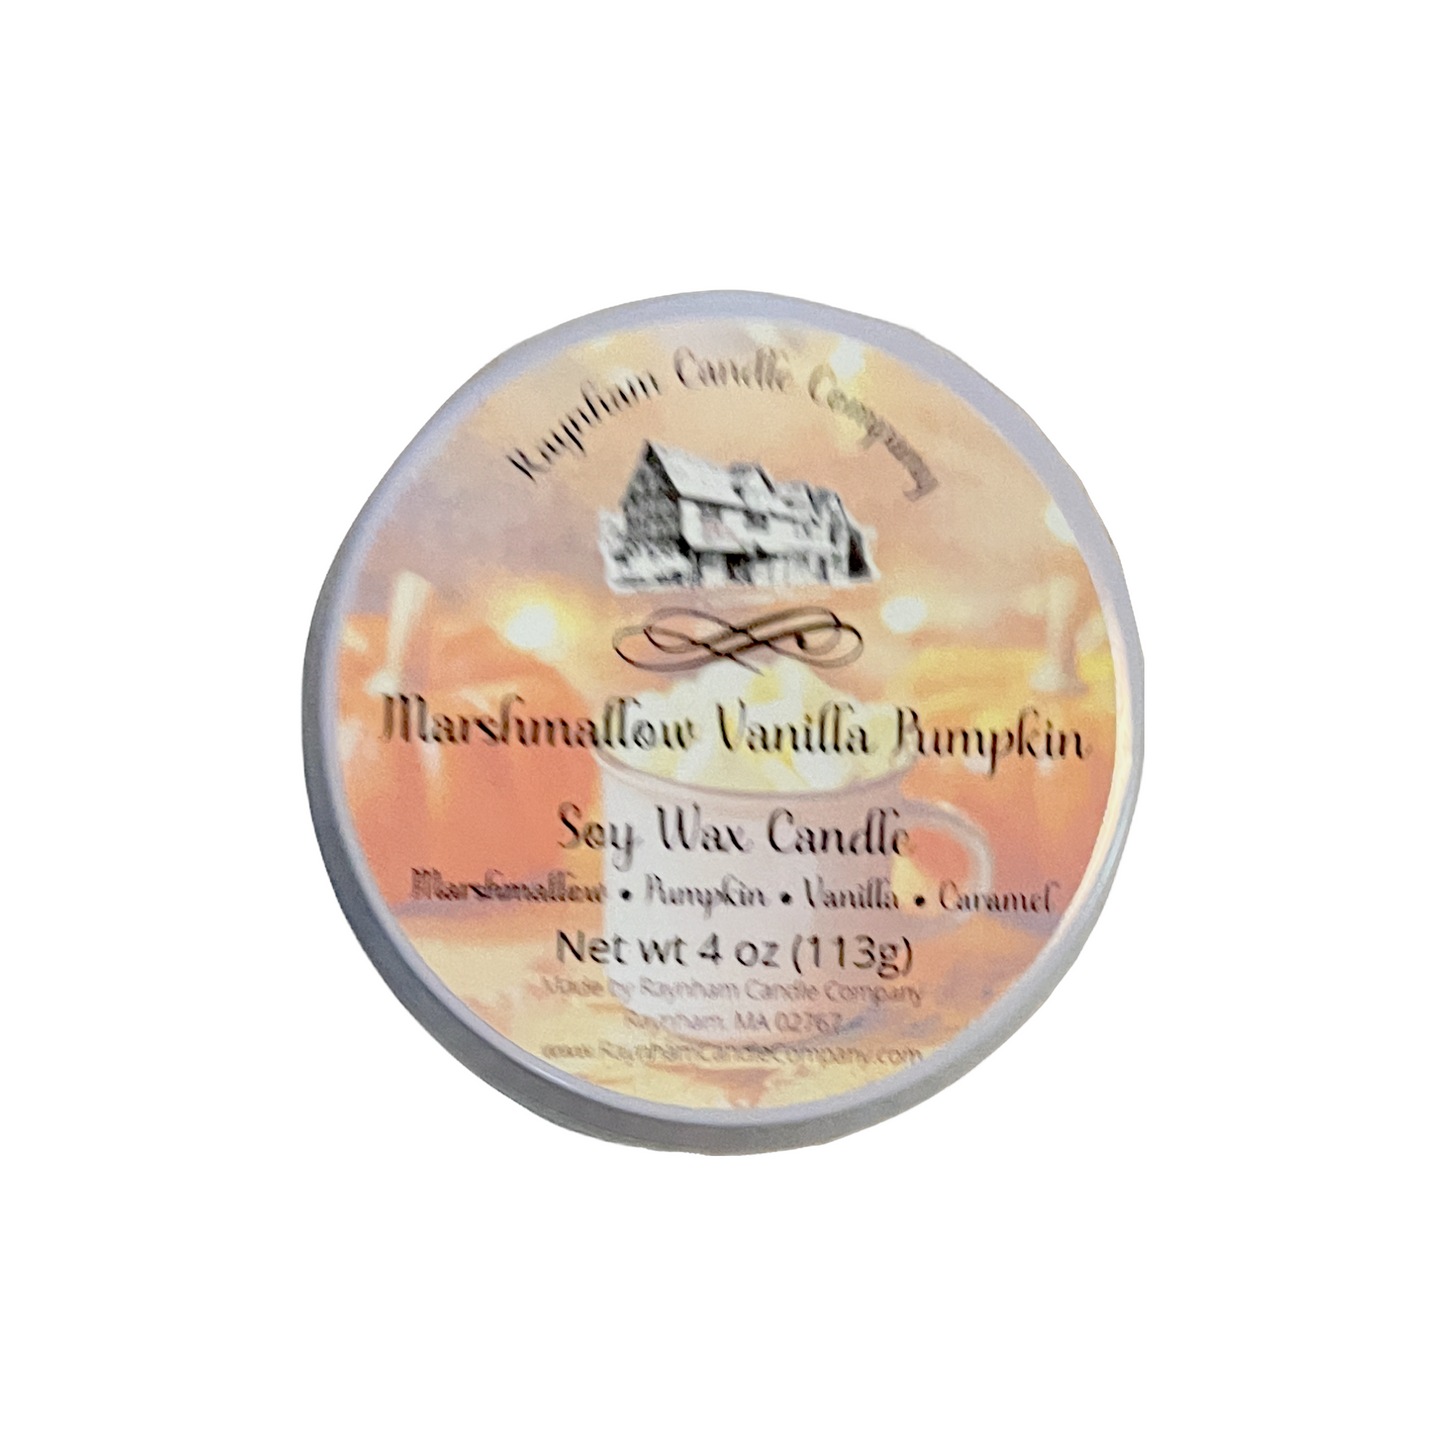 Marshmallow Vanilla Pumpkin